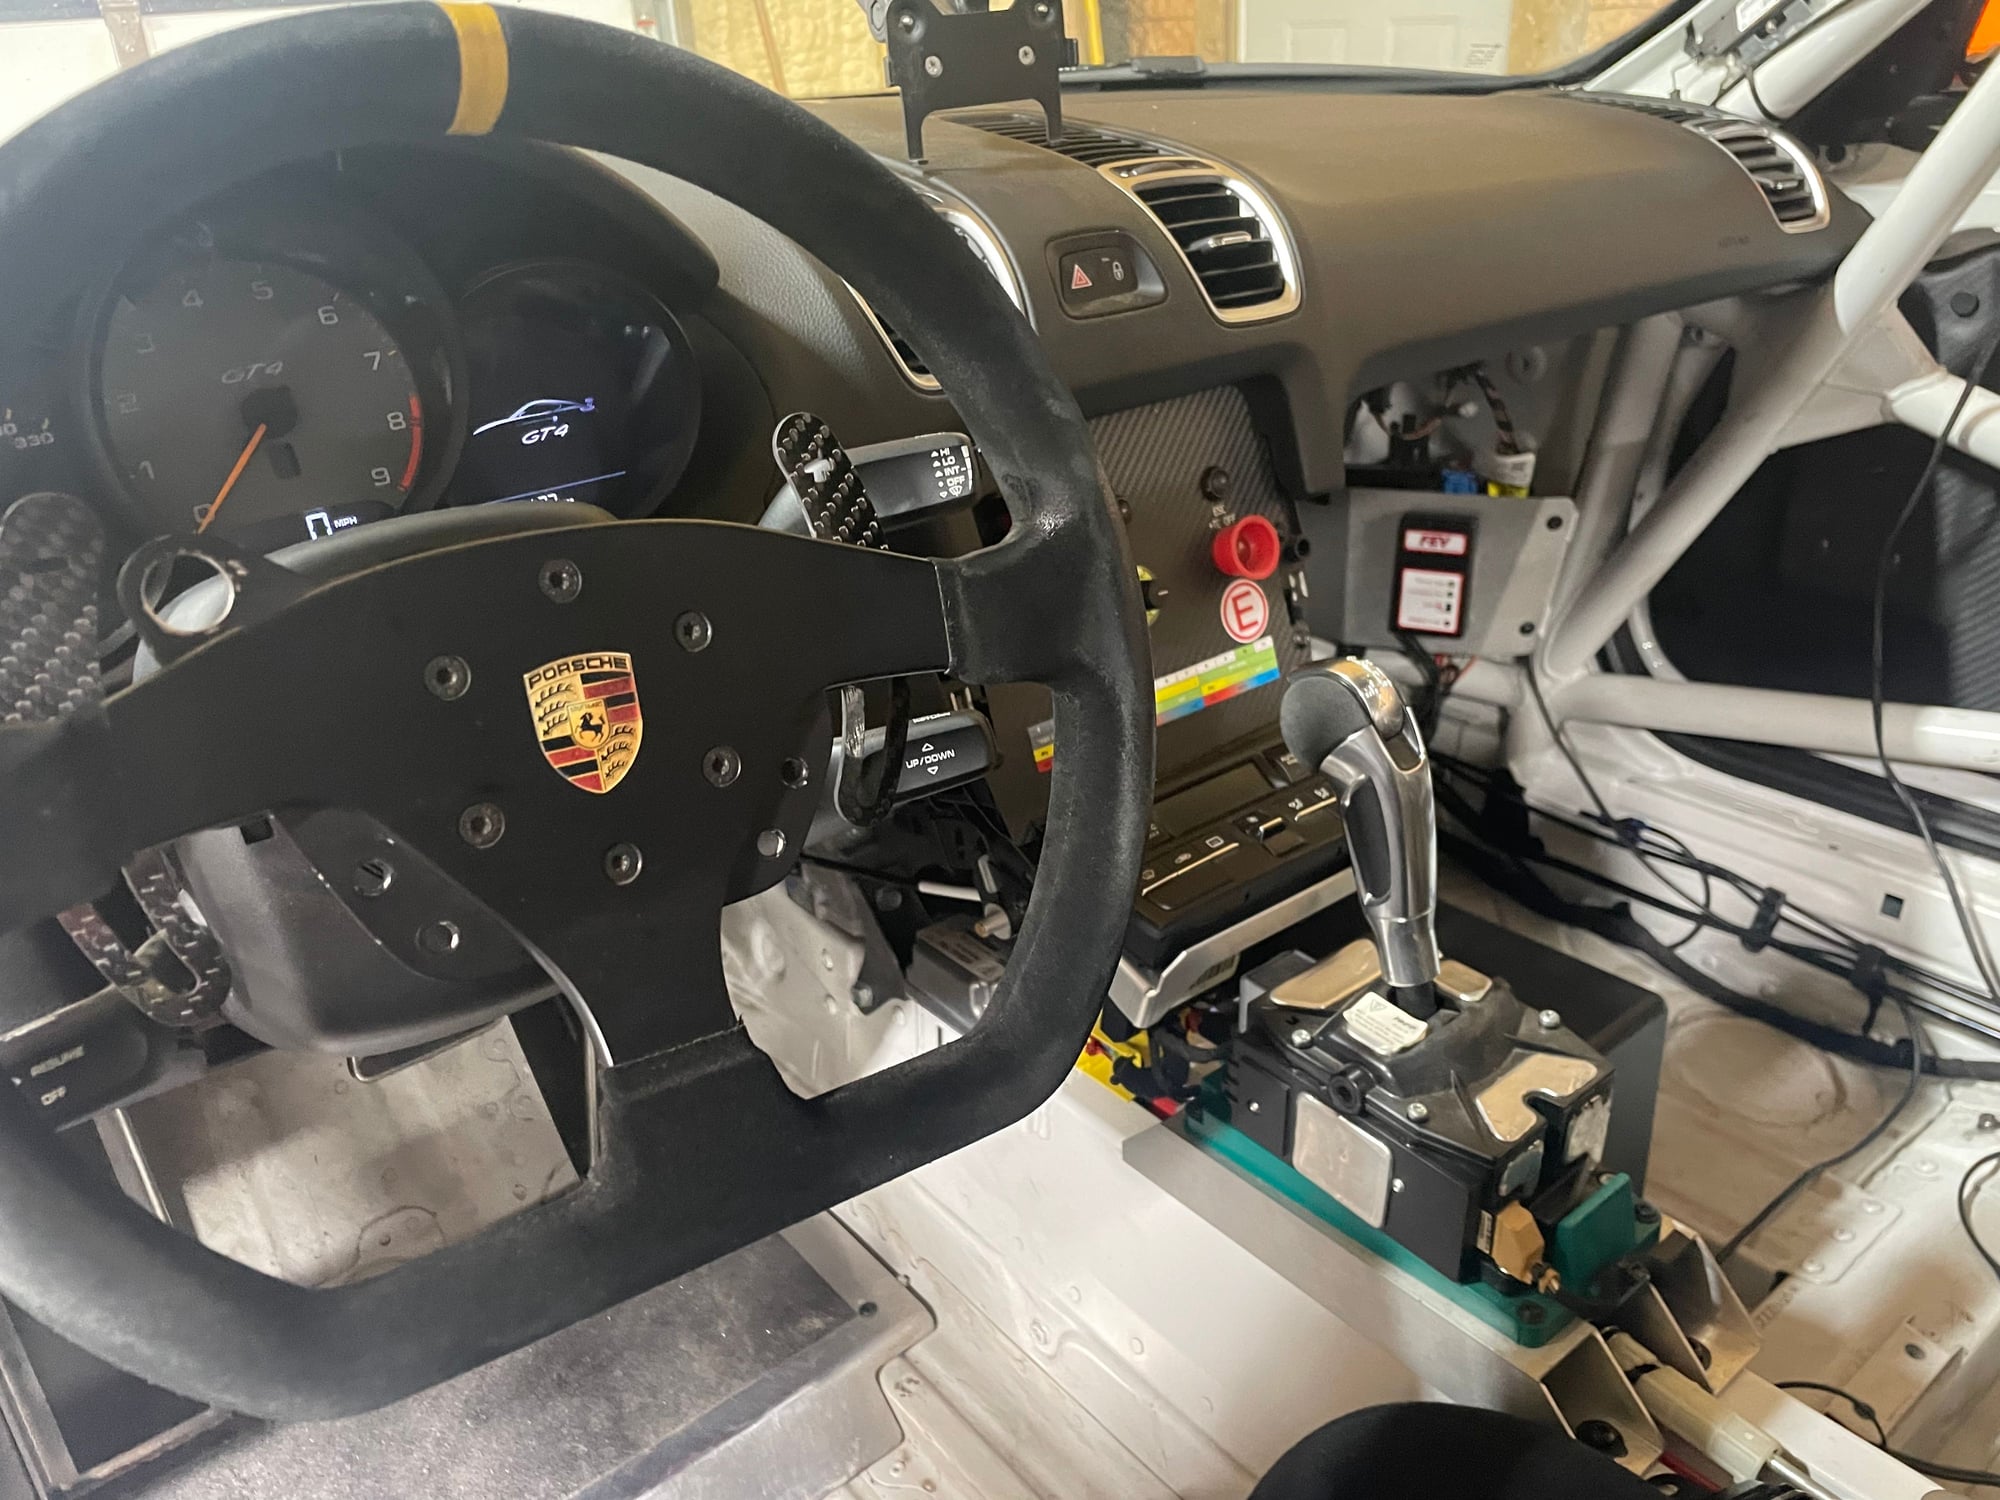 2016 Porsche Cayman GT4 - 2016 porsche GT4 Clubsport many upgrades JRZ suspension - Used - VIN XXXXXXXXXXXXXXXXX - 6,186 Miles - 6 cyl - 2WD - Automatic - Coupe - White - Little Rock, AR 72223, United States